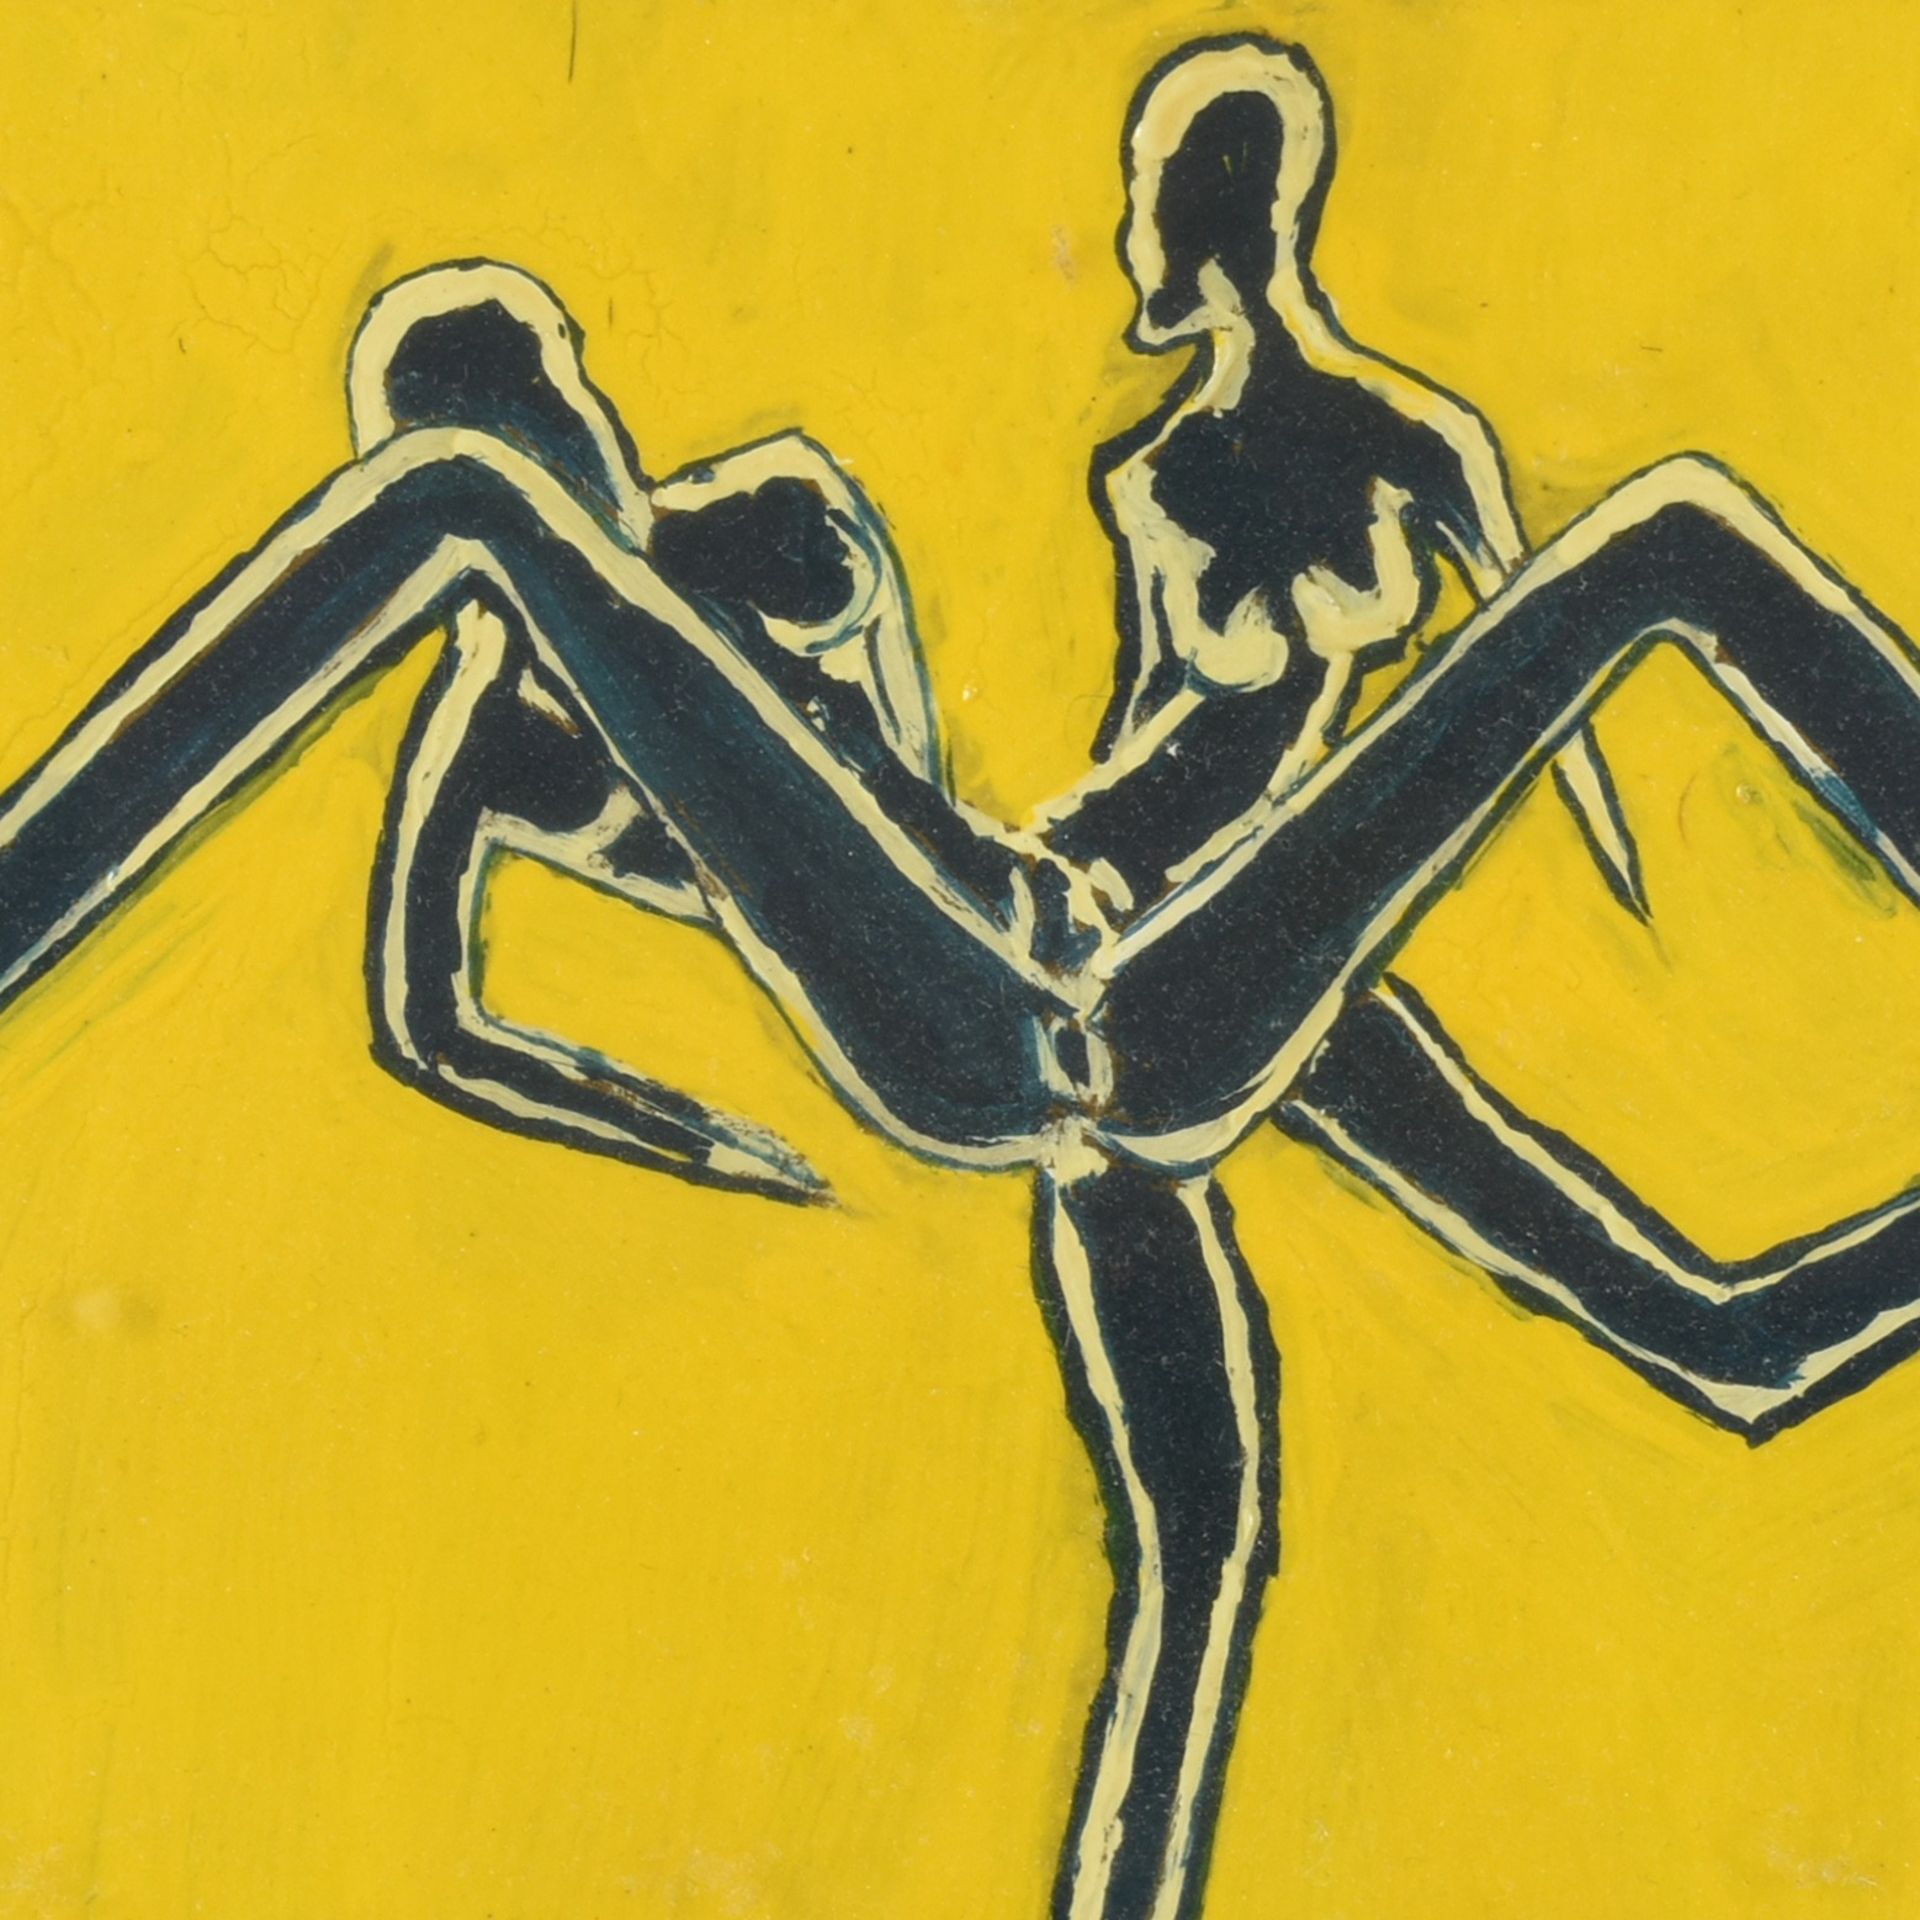 Monogrammiert hochglänzende Lackfarben auf Karton, Paar in erotischer Pose, vor leuchtend gelben